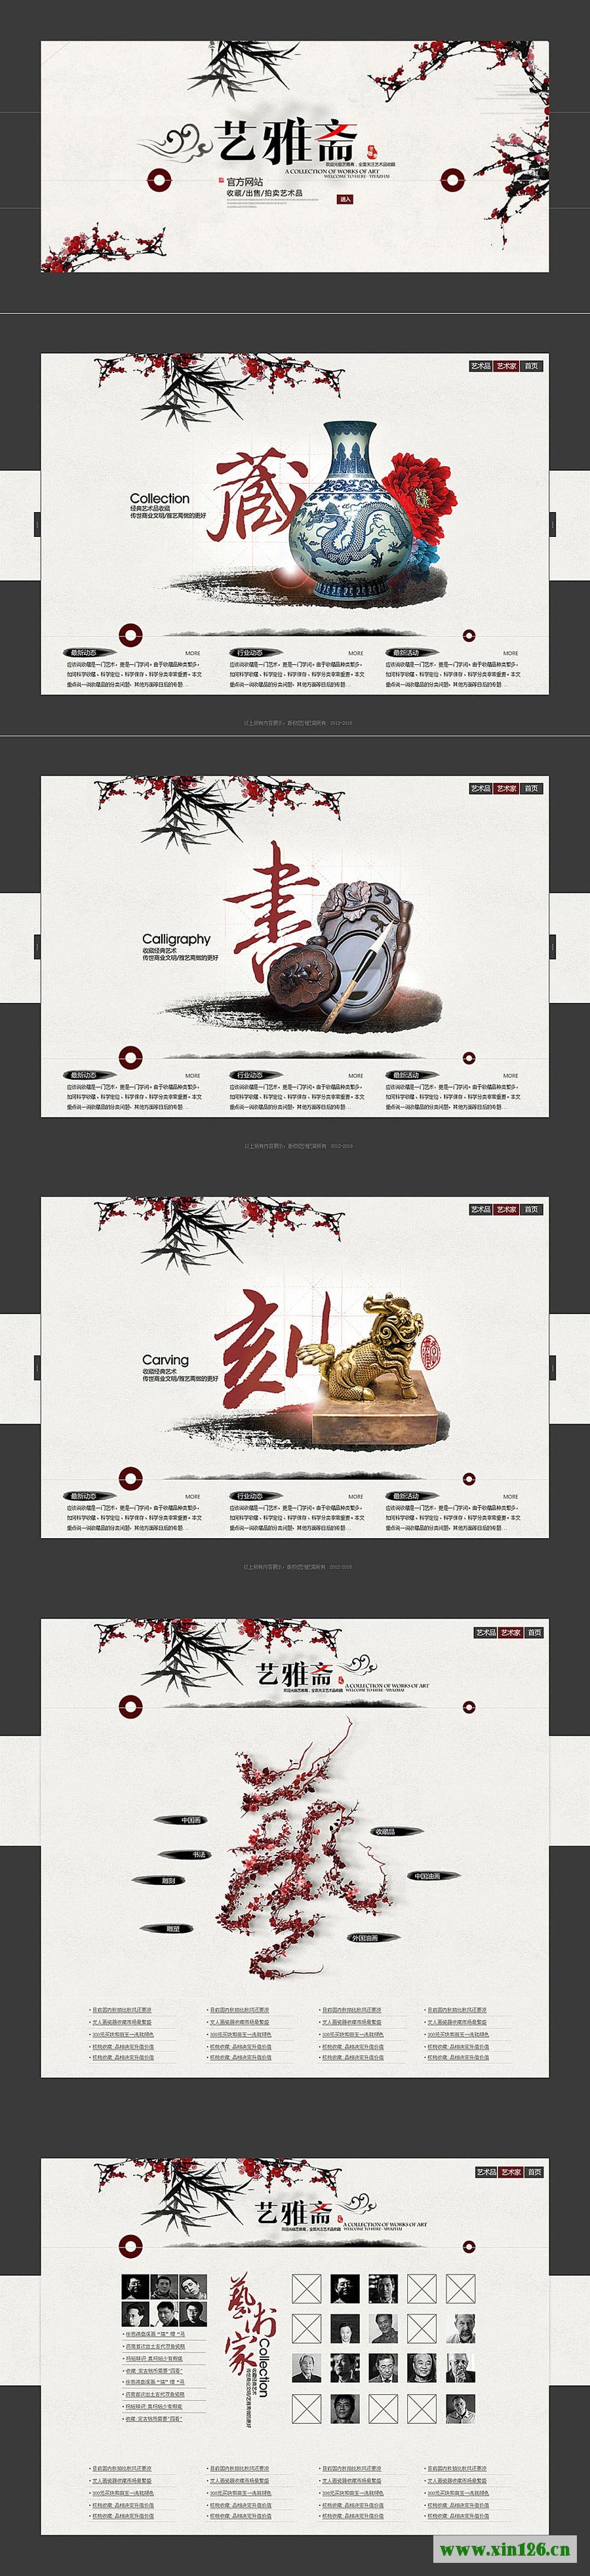 20张水墨中国风风格页面设计欣赏